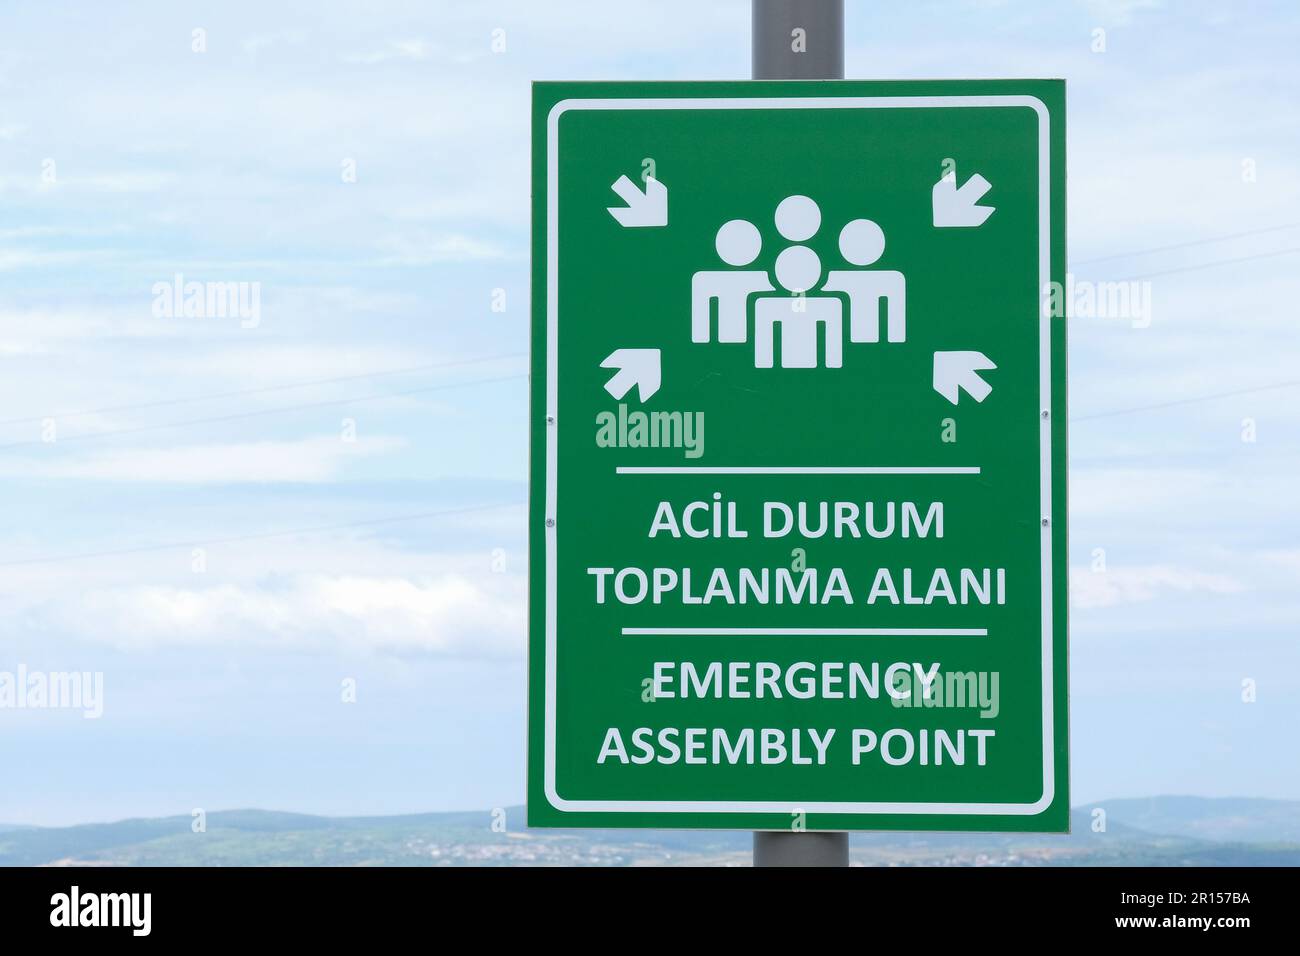 Nahaufnahme Notfall Sammelpunkt Schild mit Himmelshintergrund. ACIL Durum Toplanma Alanı bedeutet in türkischer Sprache. Stockfoto